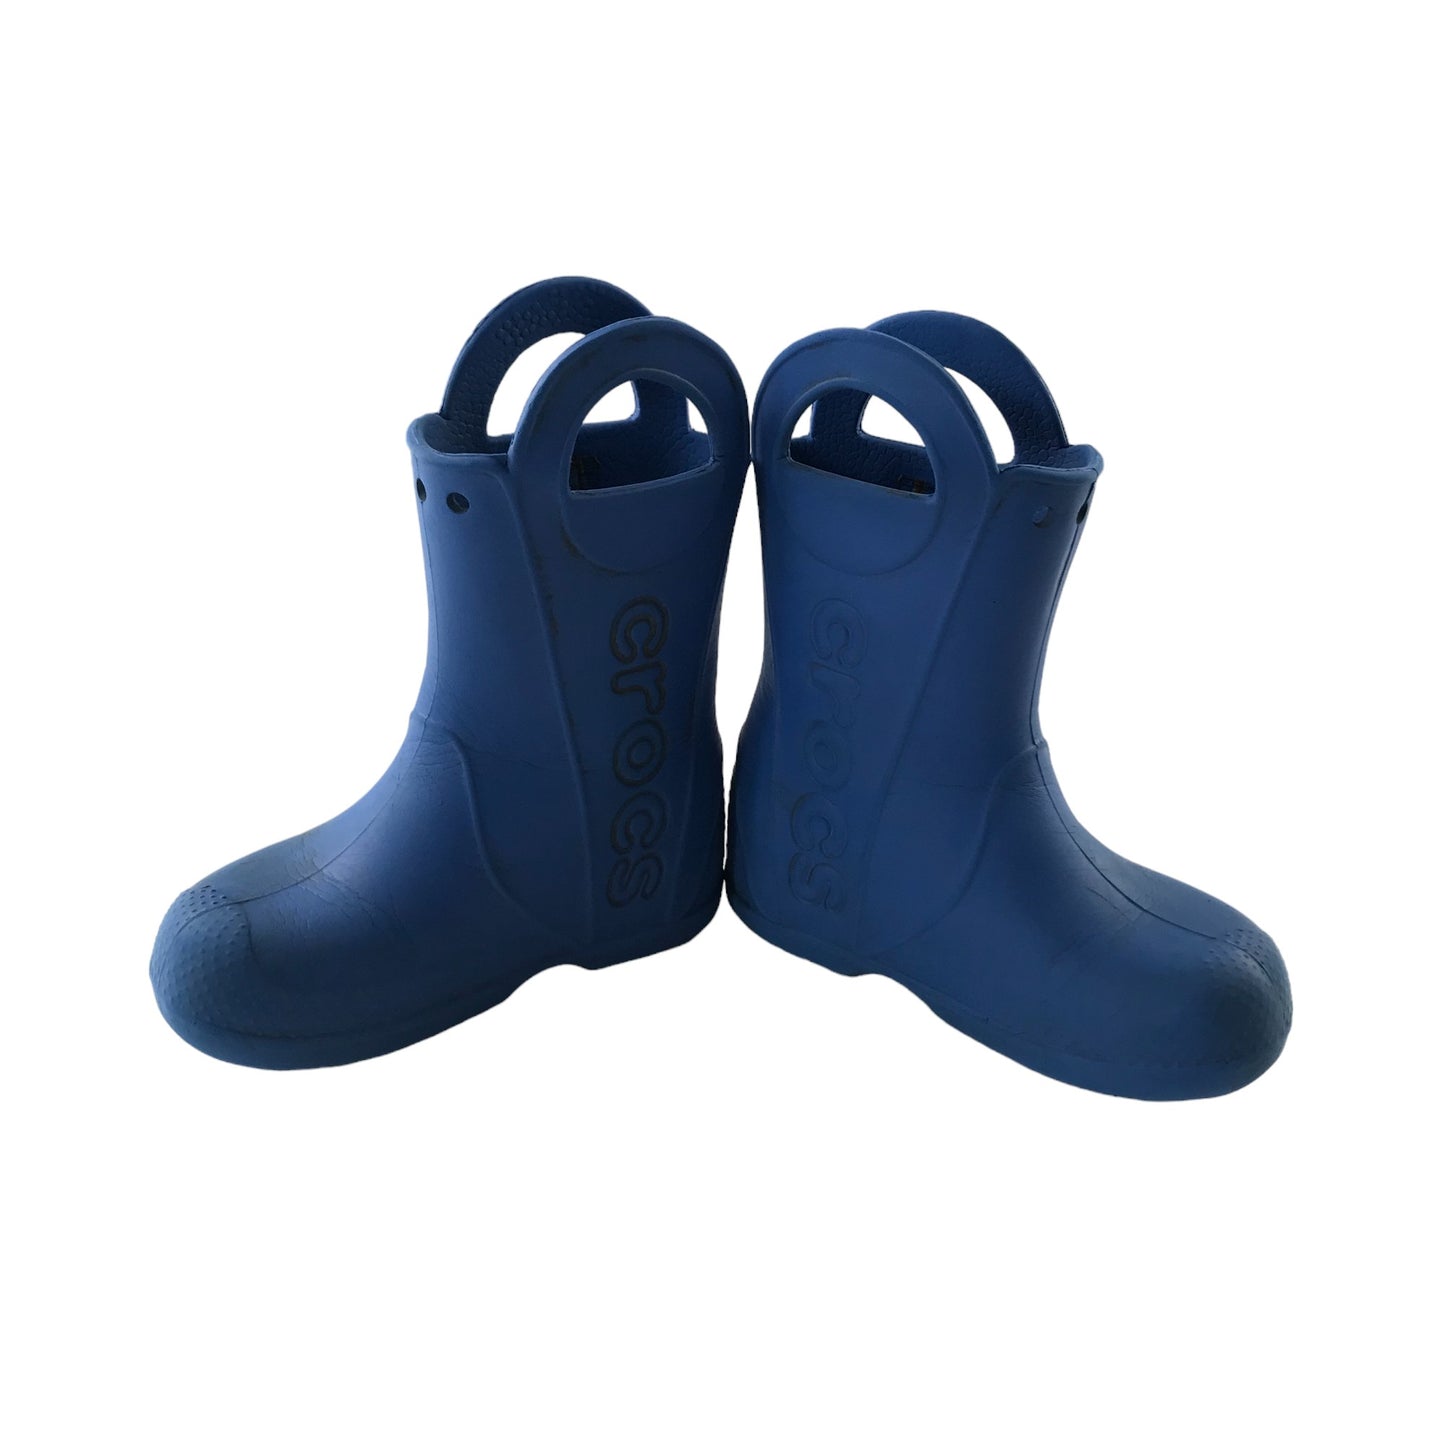 Crocs Wellies Shoe Size 11C Junior Blue Plain with Handles